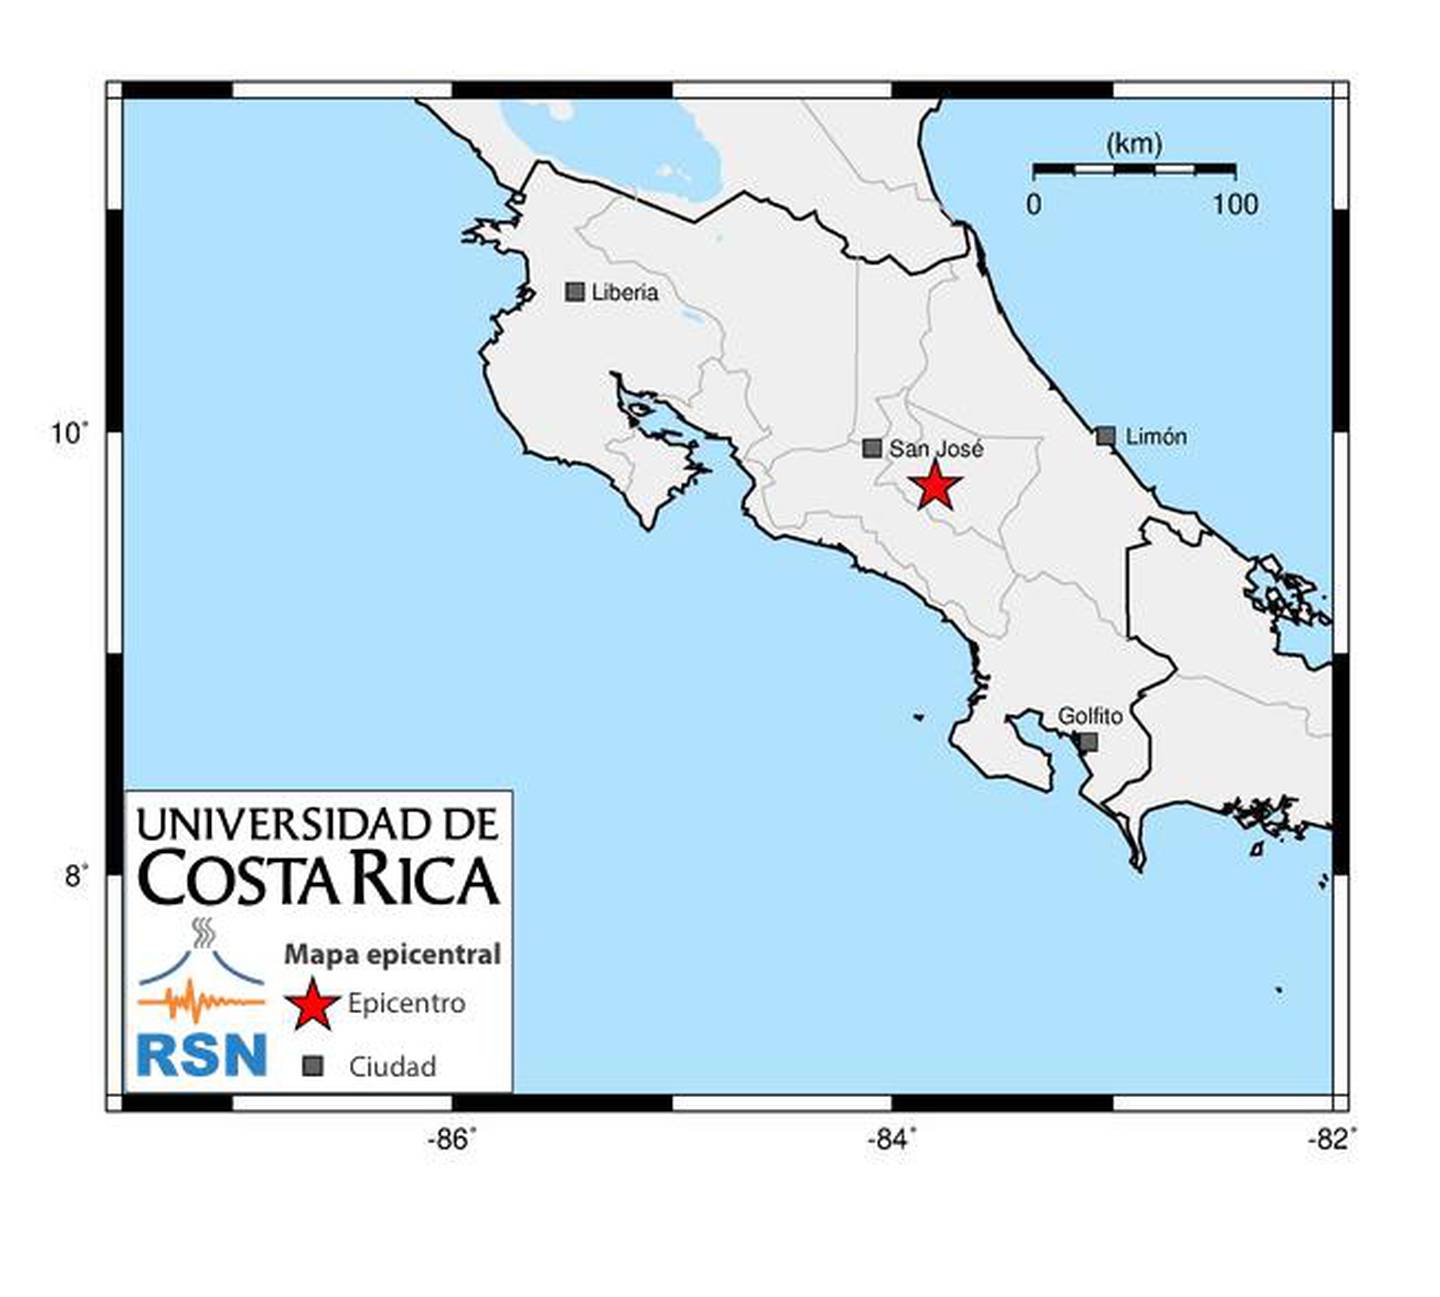 La intensidad del temblor en Cartago fue menor para algunas zonas aledañas, como ciertos cantones de Heredia y San José.